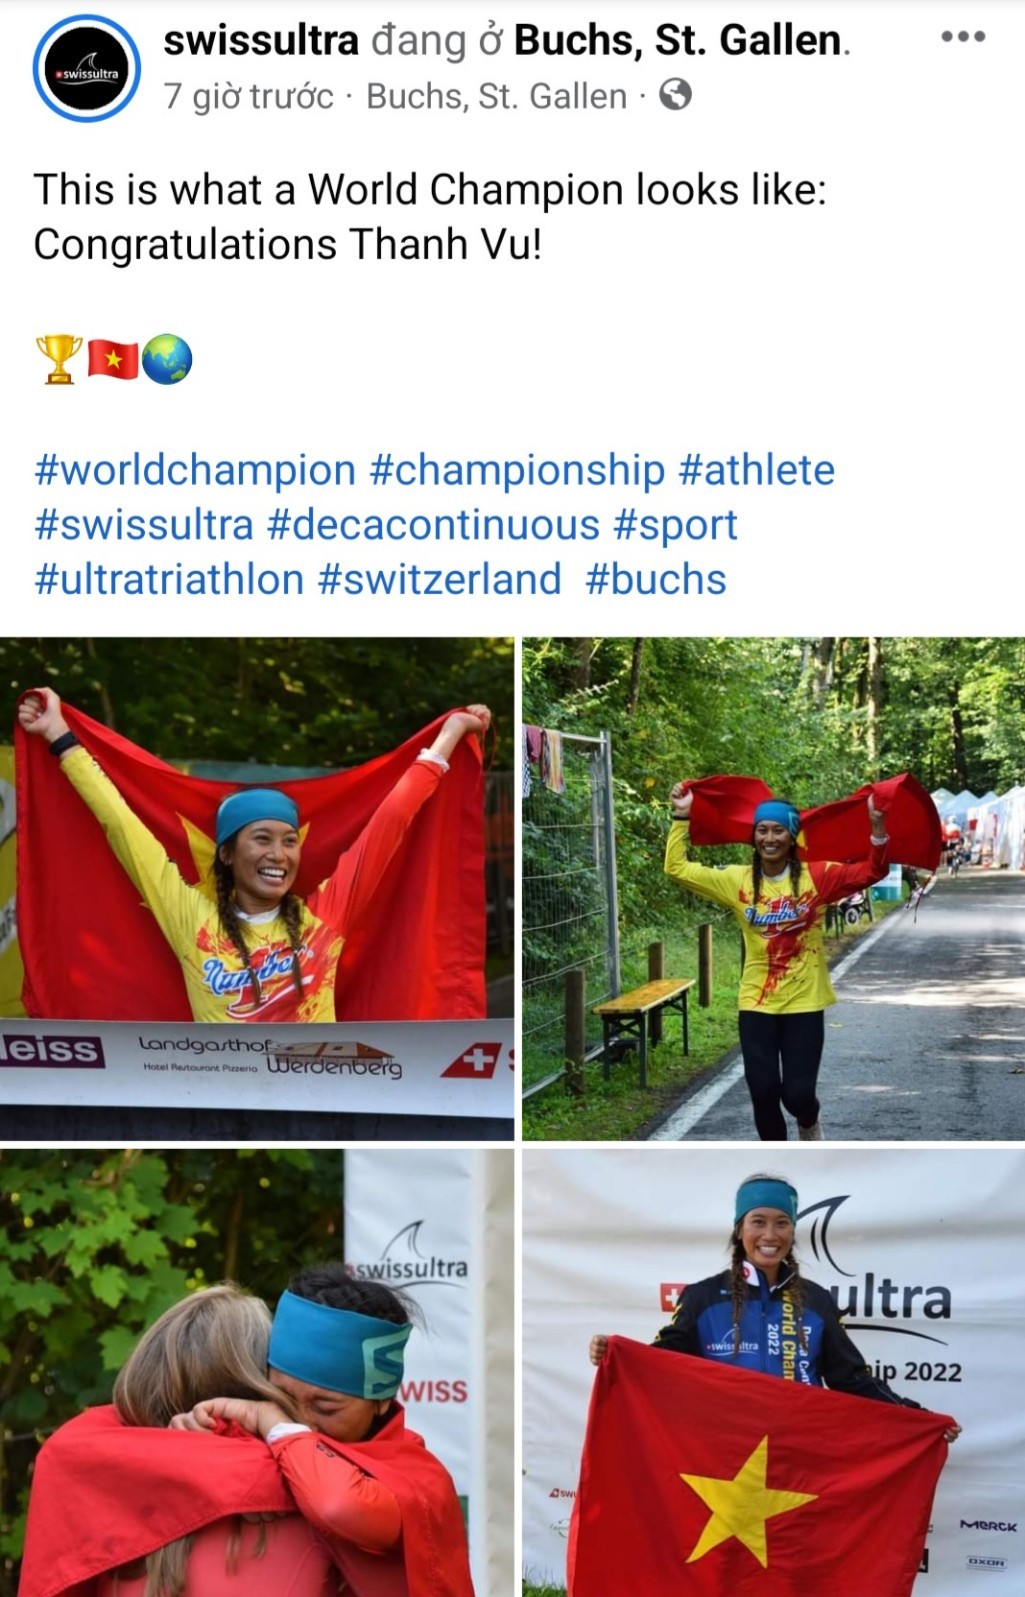 THP Group Ambassador Thanh Vu - First Vietnamese woman to win 'world's toughest' triathlon